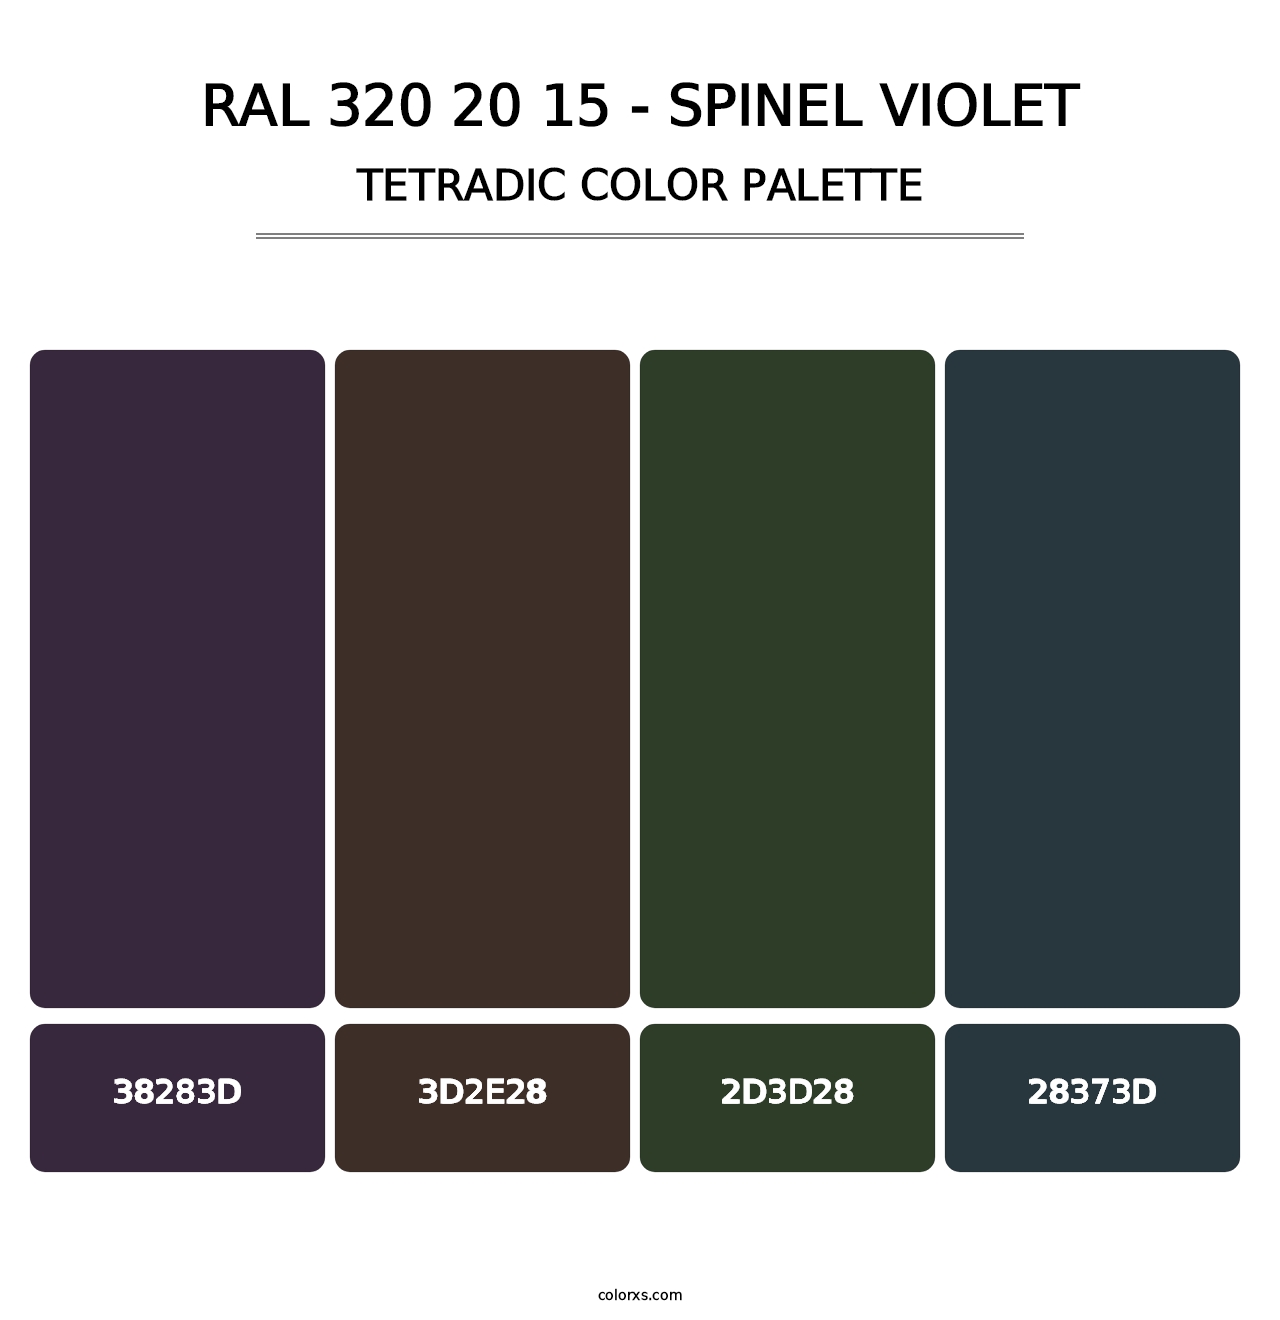 RAL 320 20 15 - Spinel Violet - Tetradic Color Palette